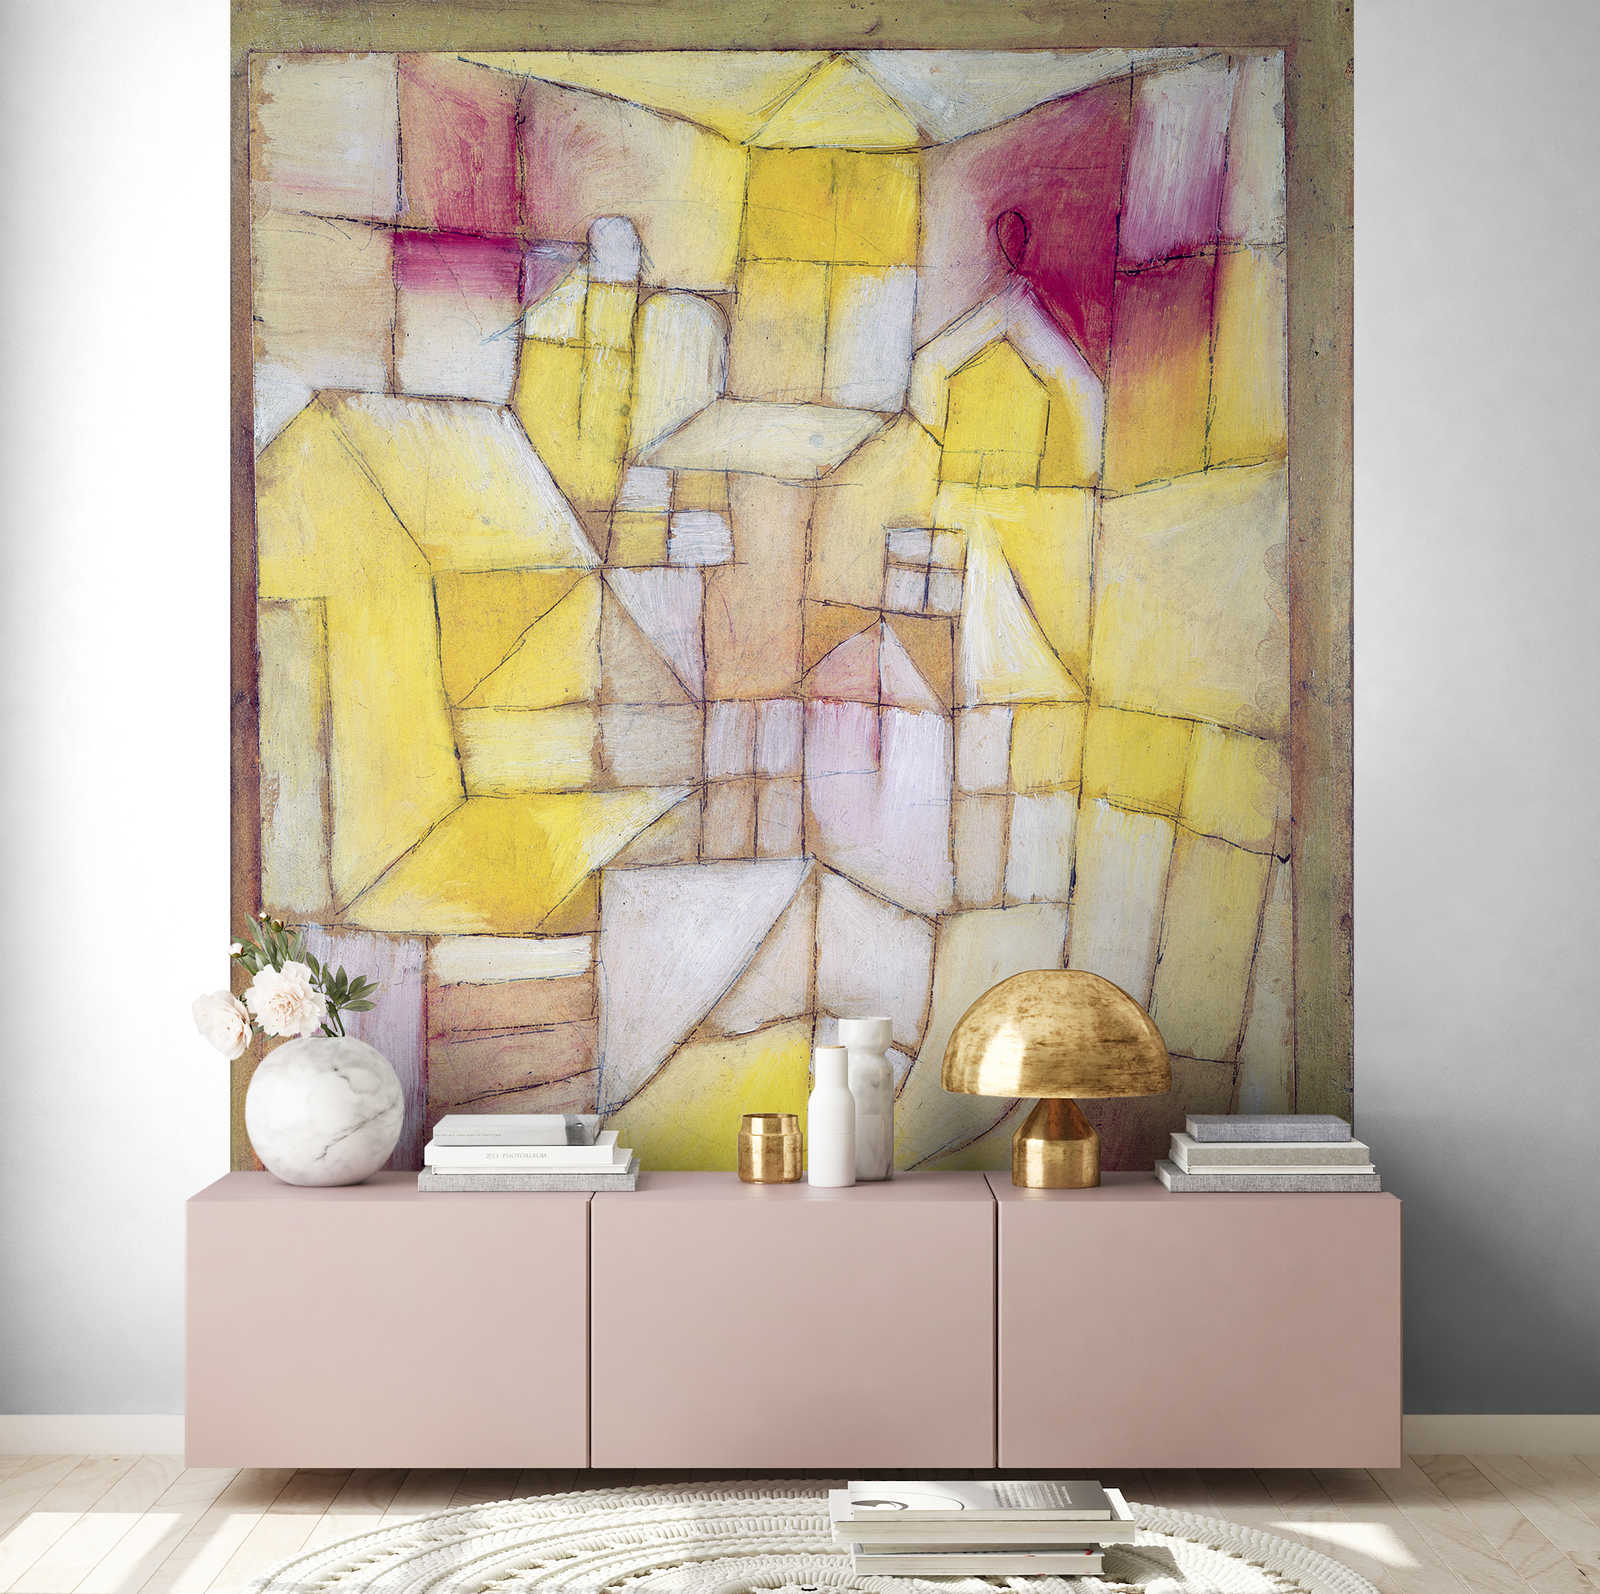             Papier peint "Rose-Jaune" de Paul Klee
        